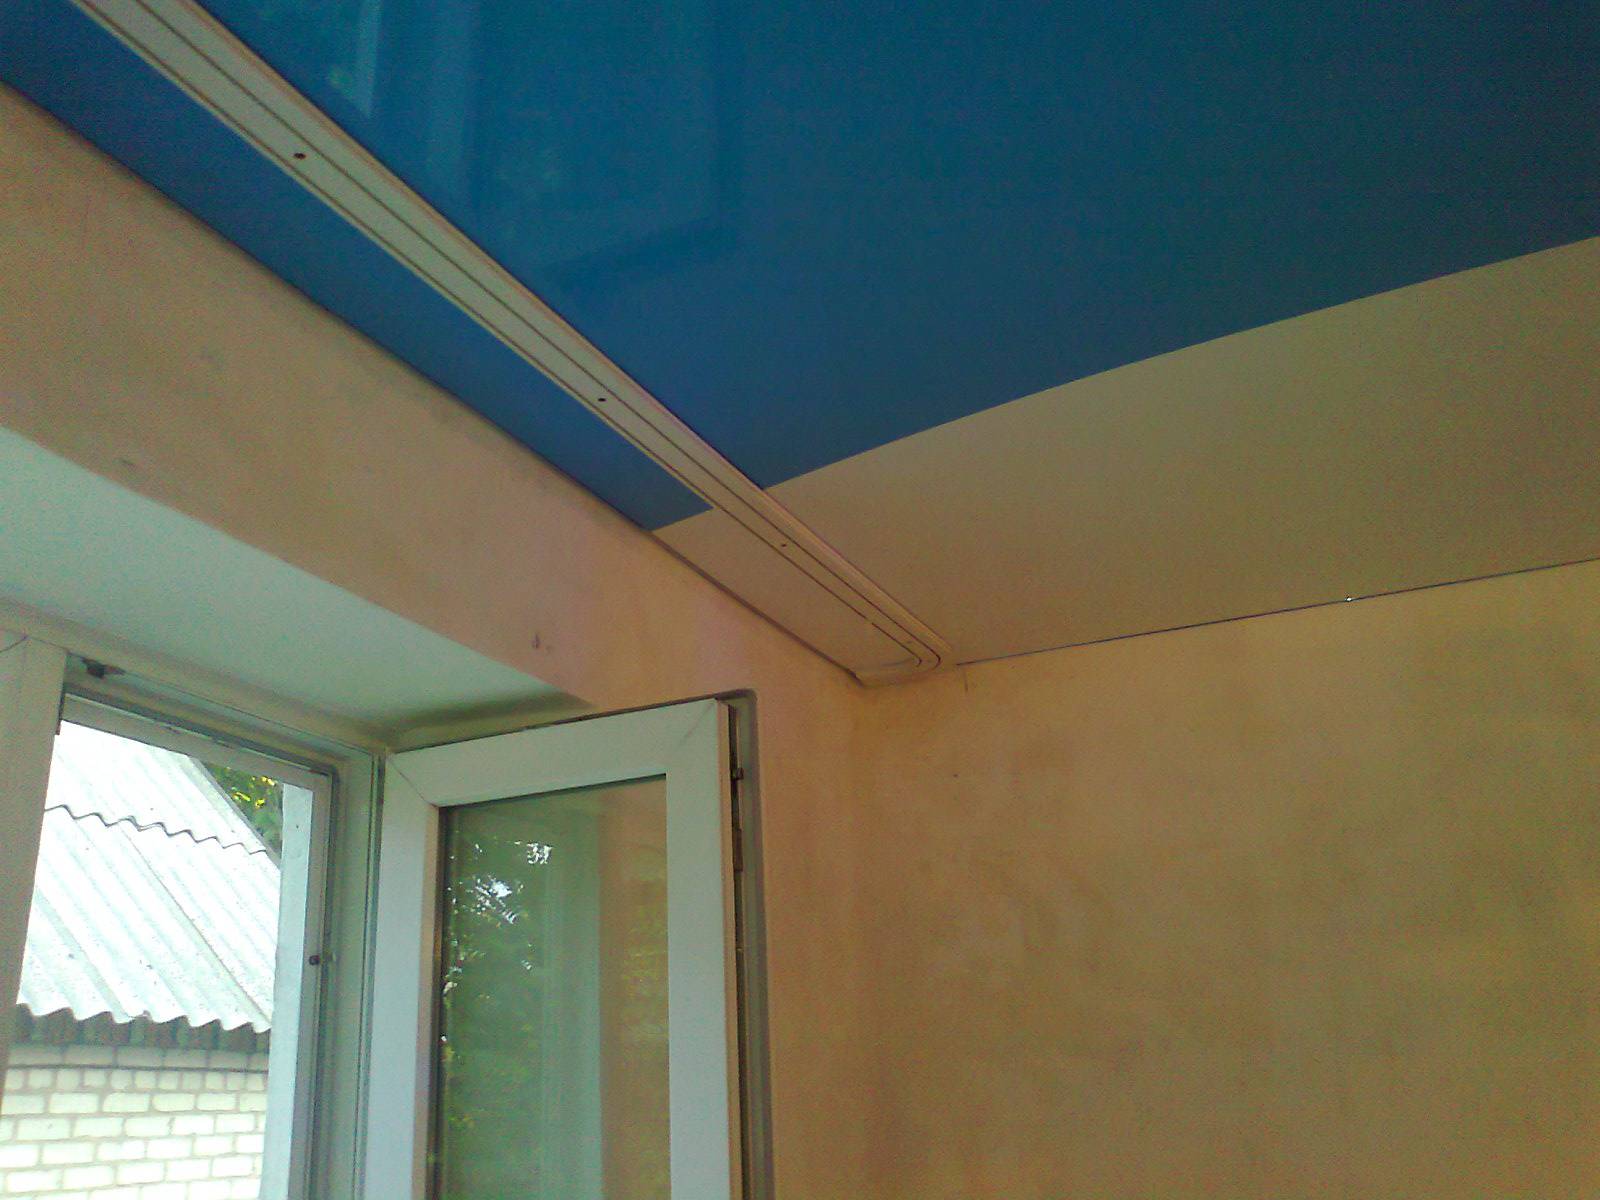 Карнизы для штор под натяжные потолки — ниша в потолке для штор, встроенный карниз, скрытая гардина, как крепить, дизайн